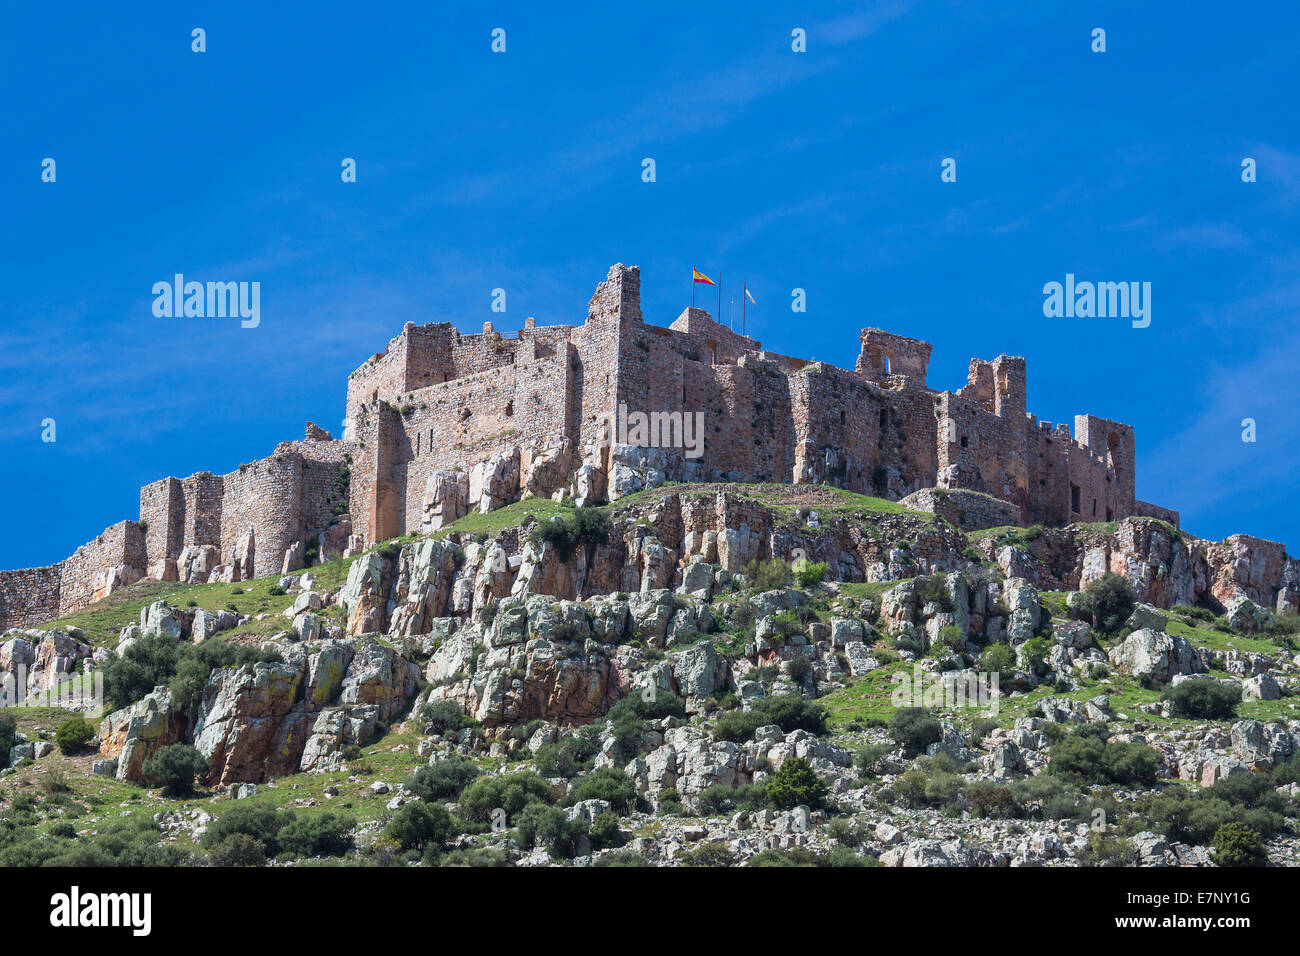 Kastilien, Burg, Ciudad Real, Provinz, Region, Spanien, Europa, Architektur, Calatrava, Festung, Geschichte, La Mancha, Tourismus, t Stockfoto